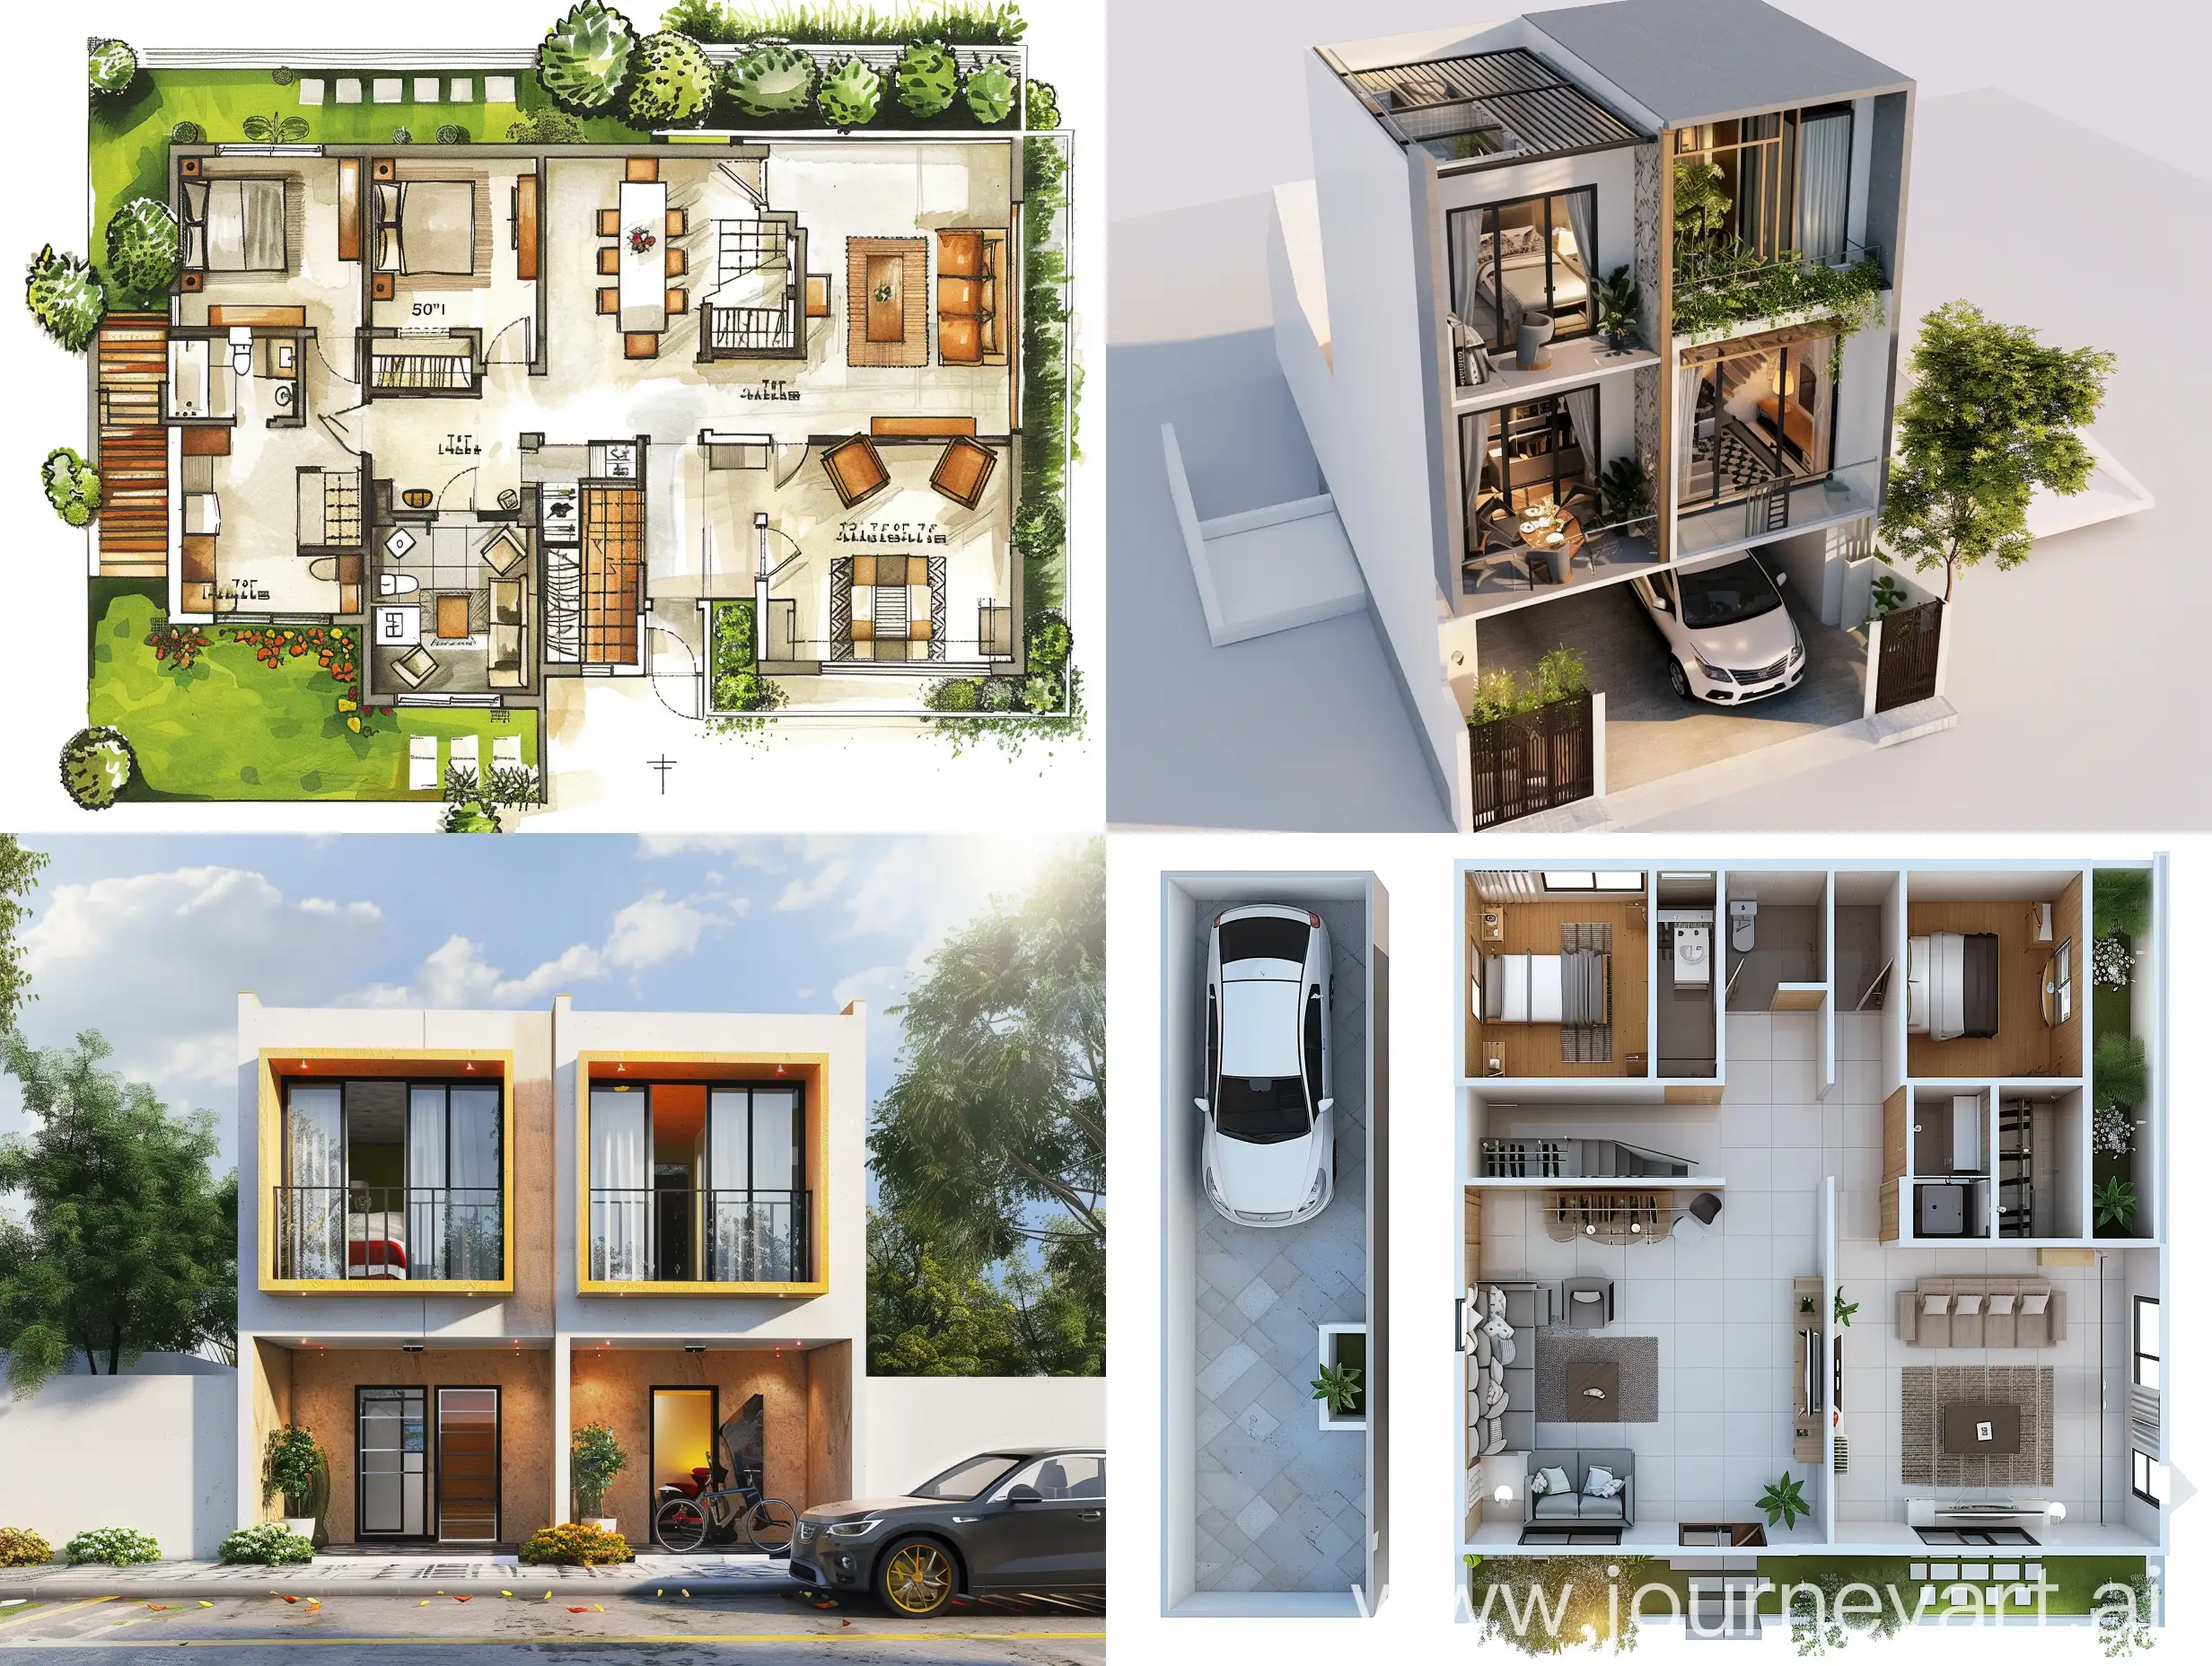 TwoUnit-Modern-Duplex-Floor-Plan-for-51x47-Feet-Land